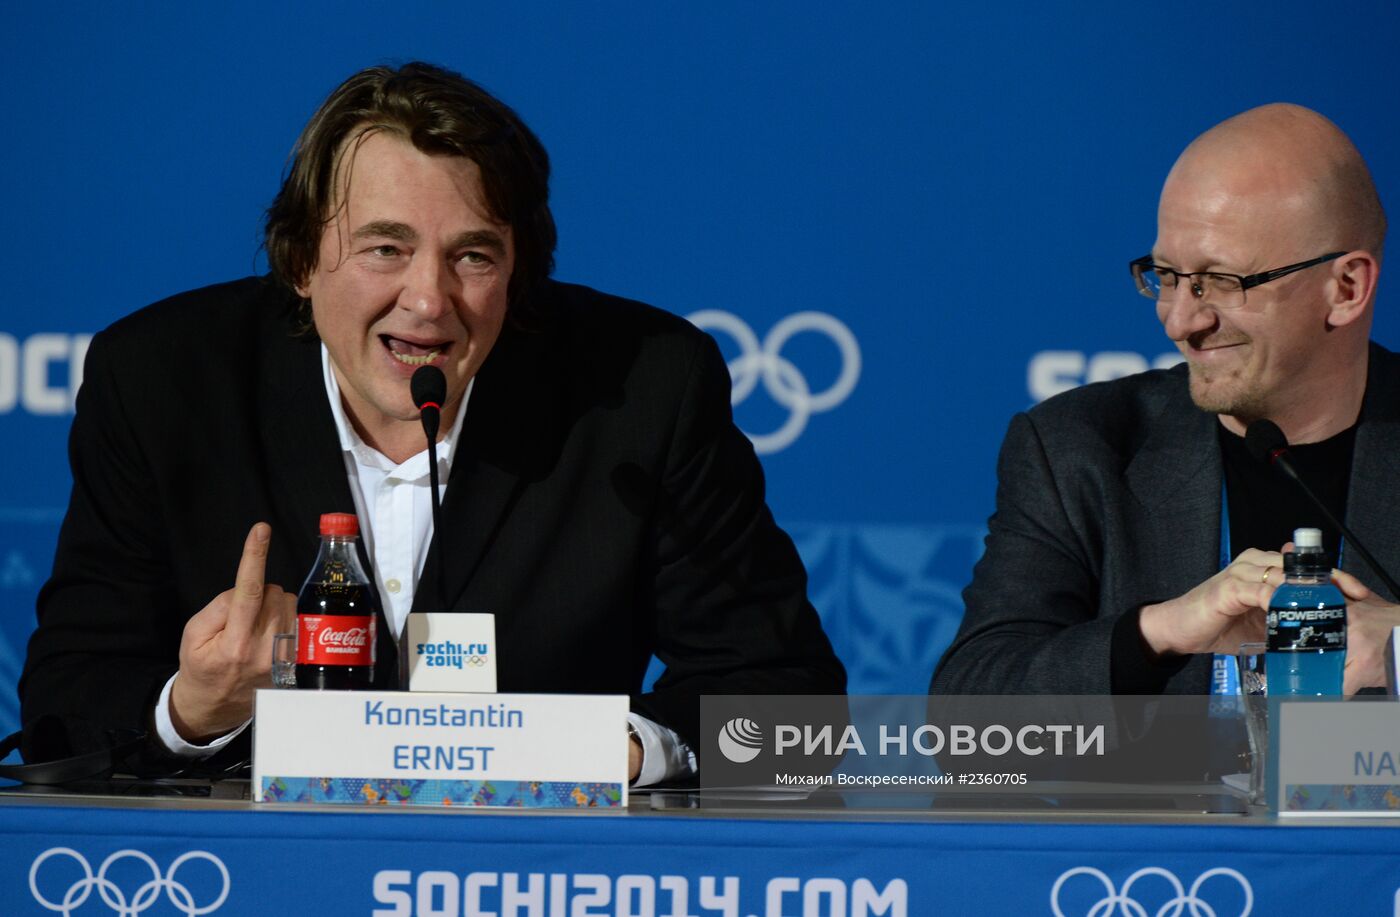 Пресс-конференция по итогам открытия XXII зимних Олимпийских игр в Сочи